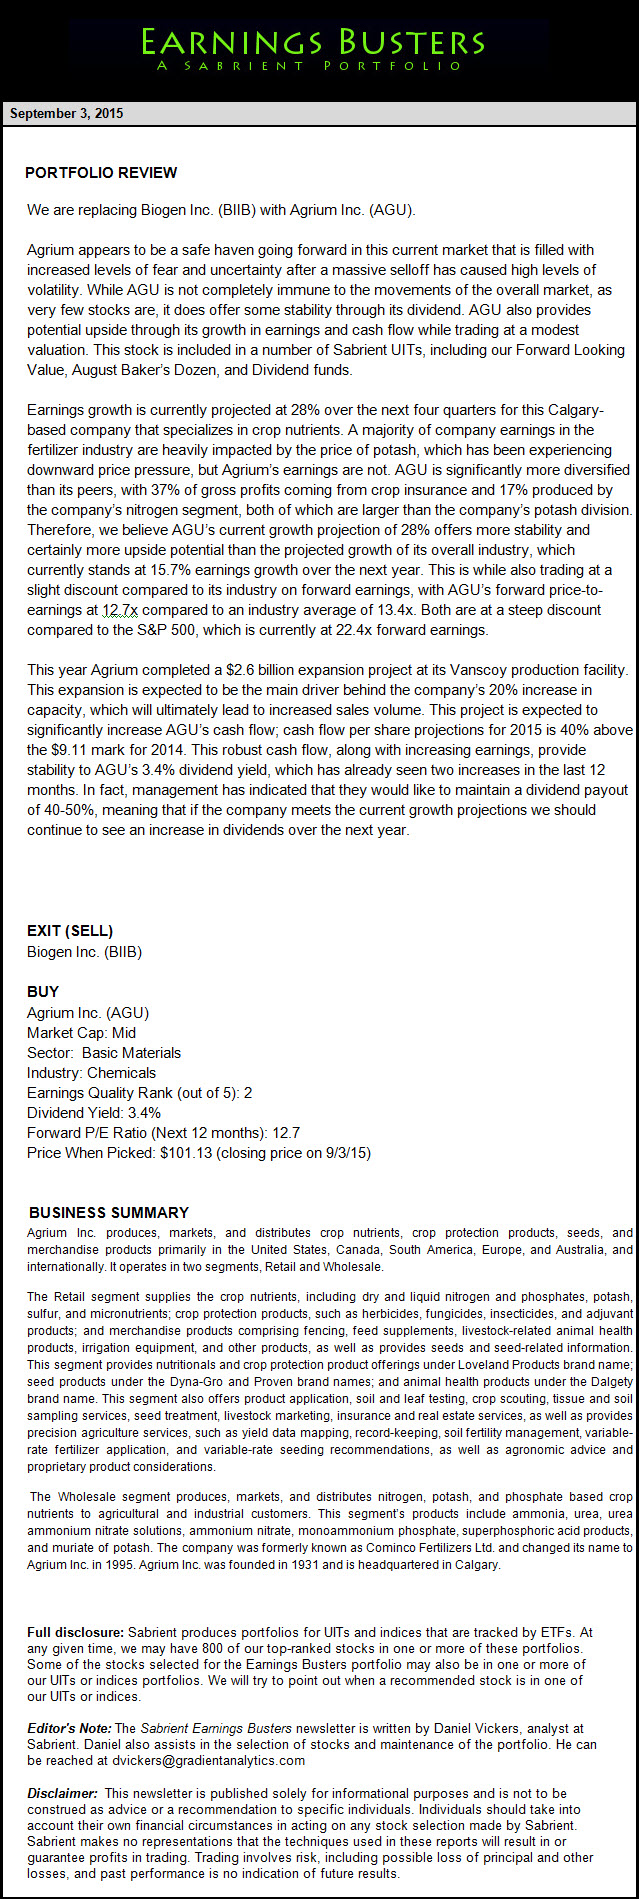 Earnings Busters Newsletter - July 23, 2015